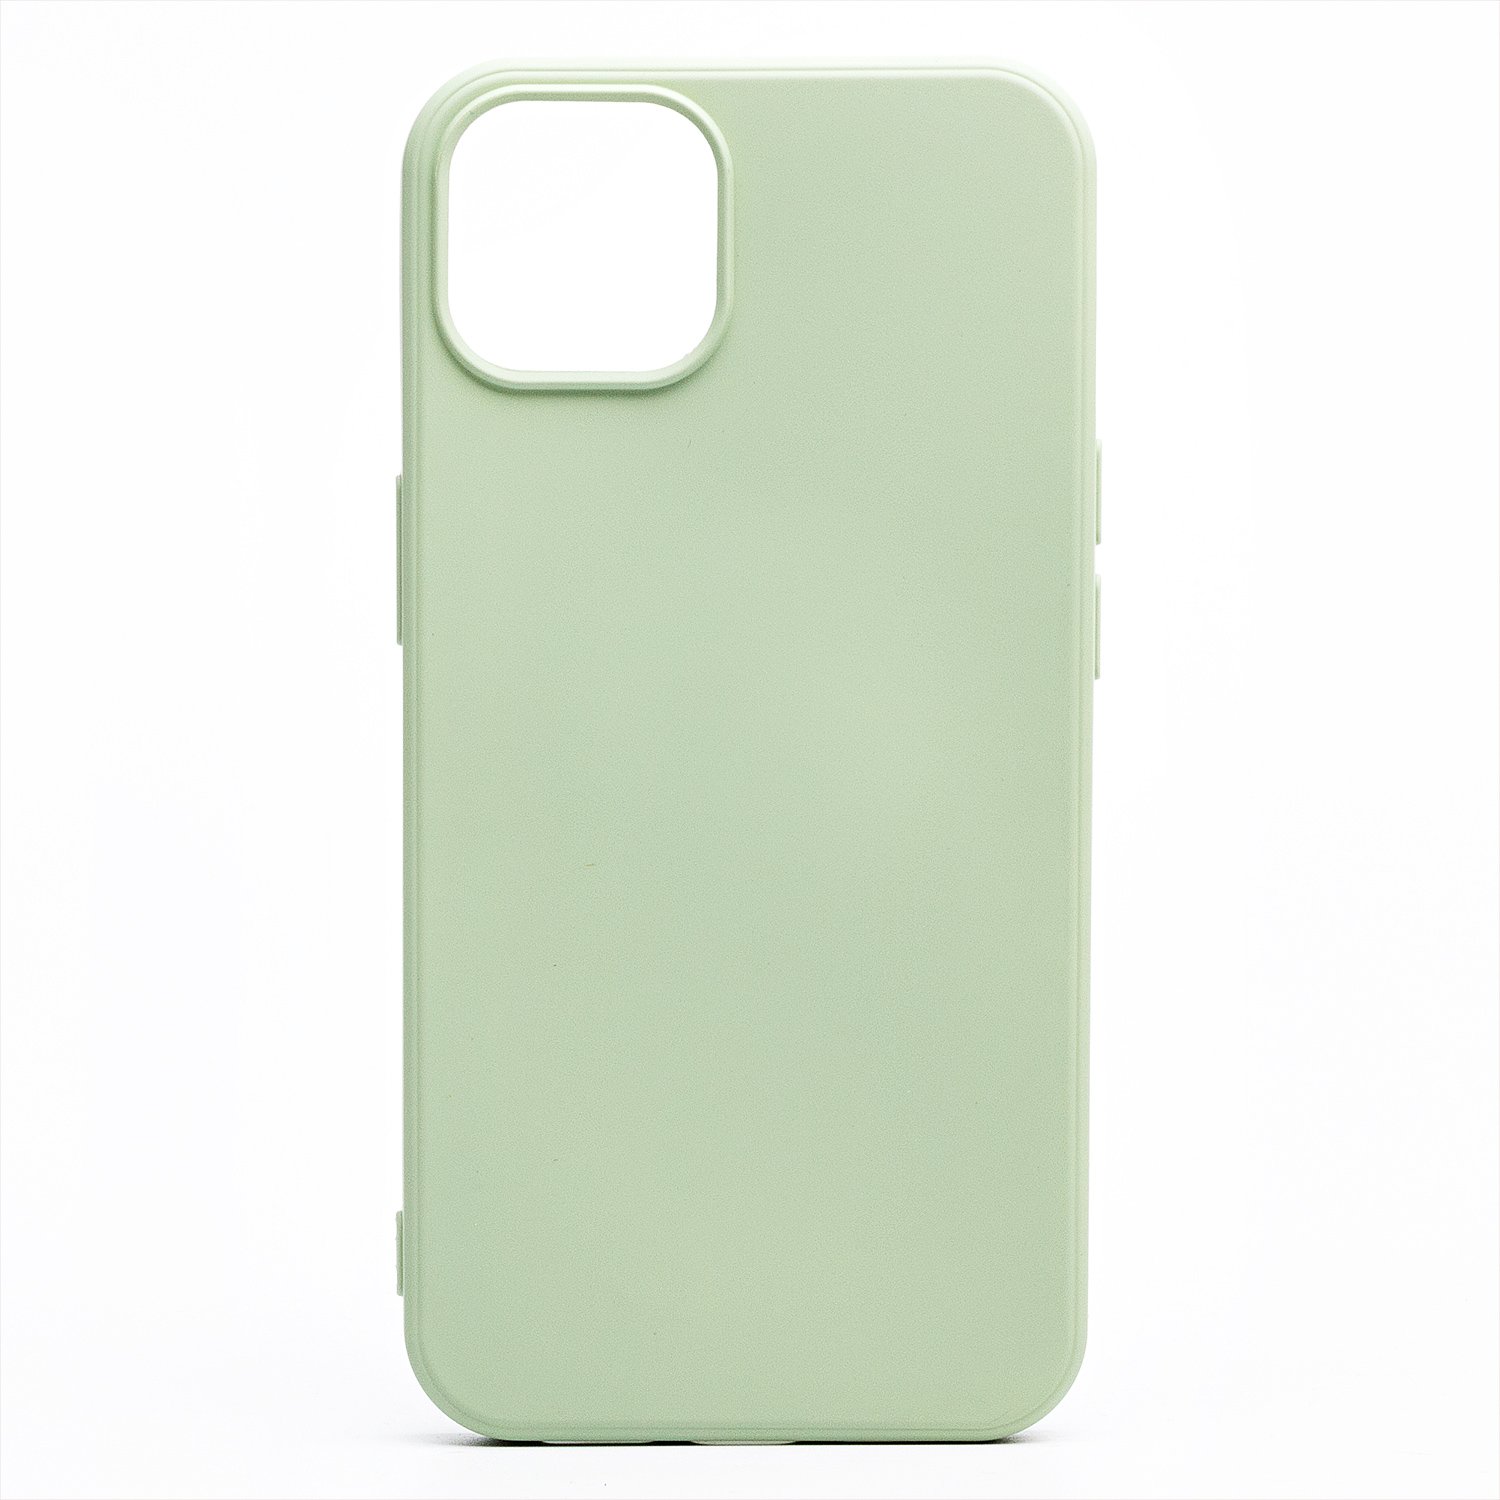 Чехол-накладка Activ Full Original Design для смартфона Apple iPhone 13 mini, силикон, светло-зеленый (133238)